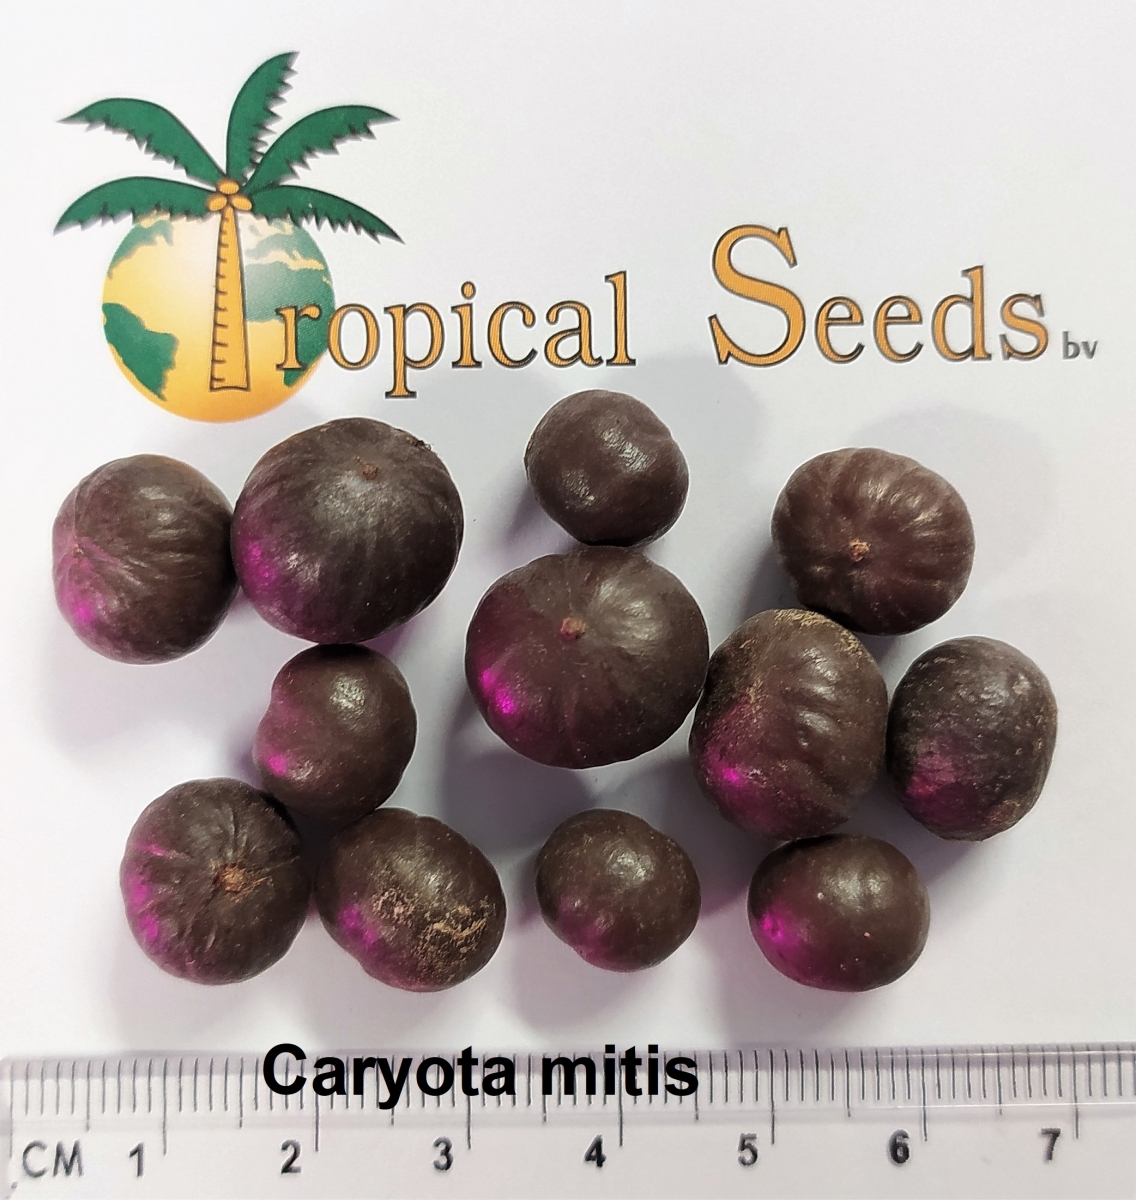 Caryota mitis Seeds